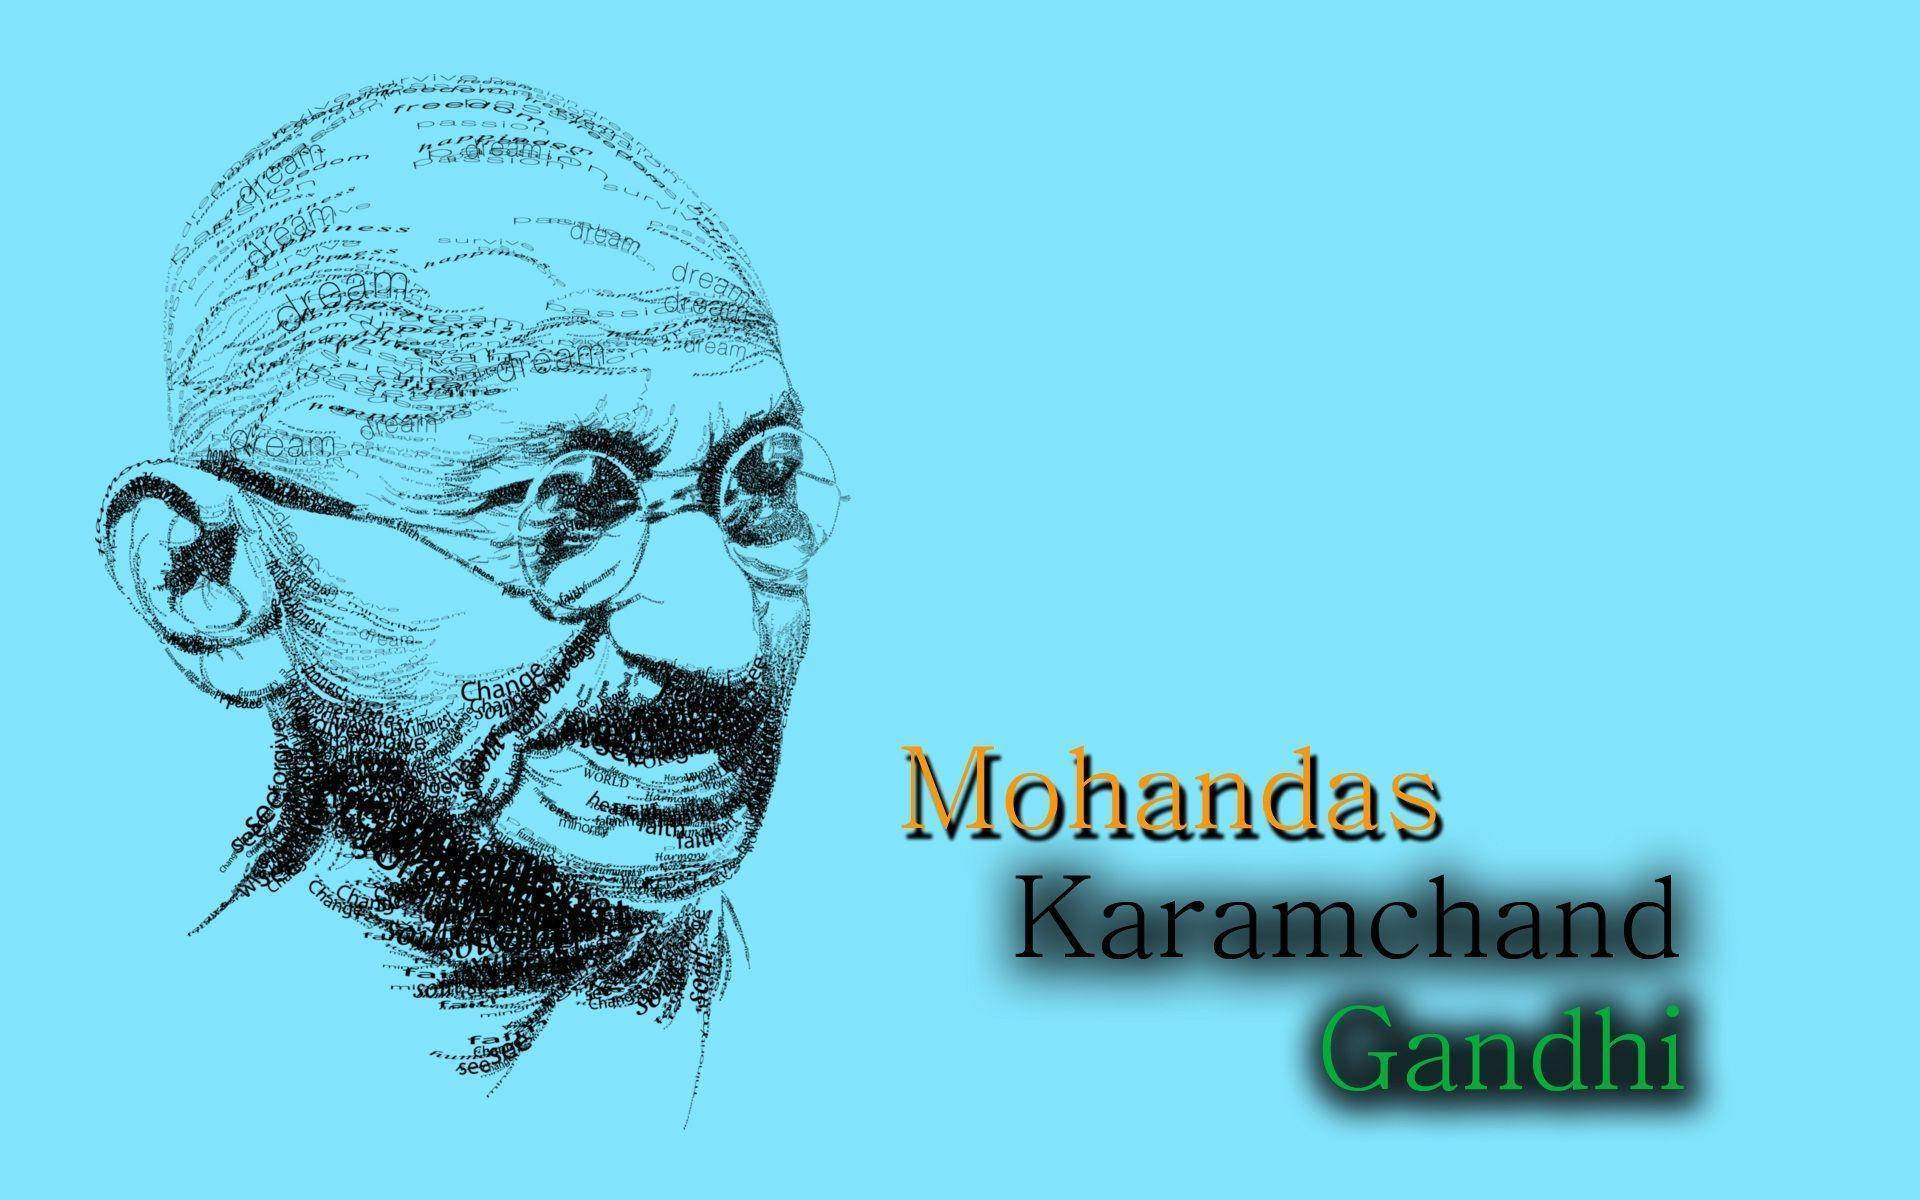 Mahatma Gandhi Monochrome Portrait Wallpaper